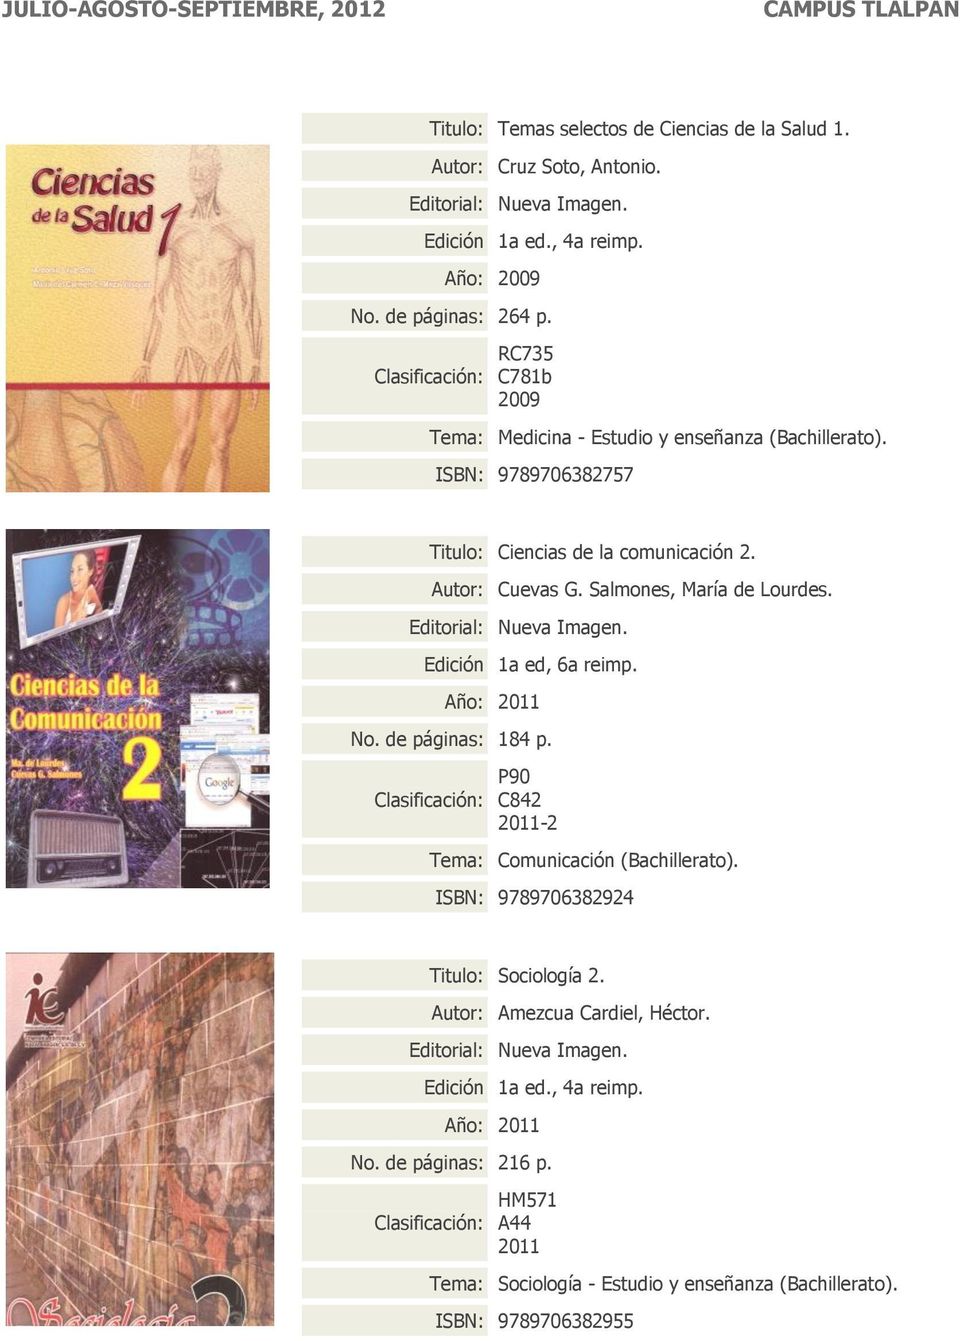 Salmones, María de Lourdes. Edición 1a ed, 6a reimp. No. de páginas: 184 p. P90 C842-2 Comunicación (Bachillerato).